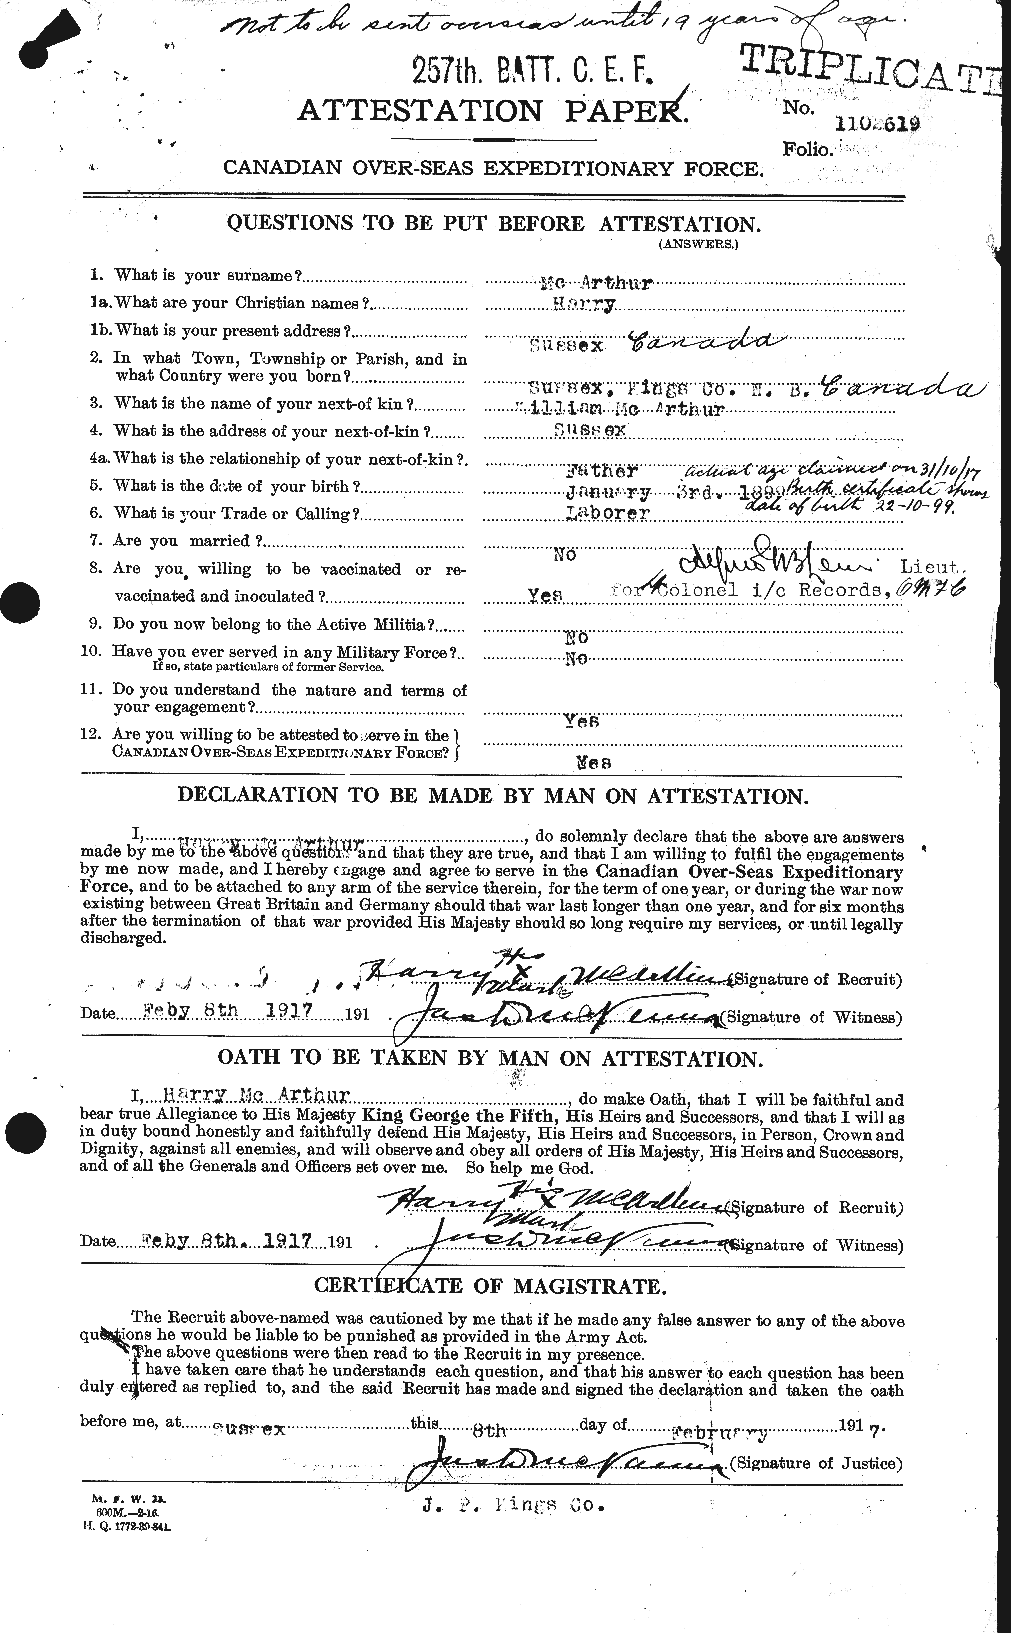 Dossiers du Personnel de la Première Guerre mondiale - CEC 131028a